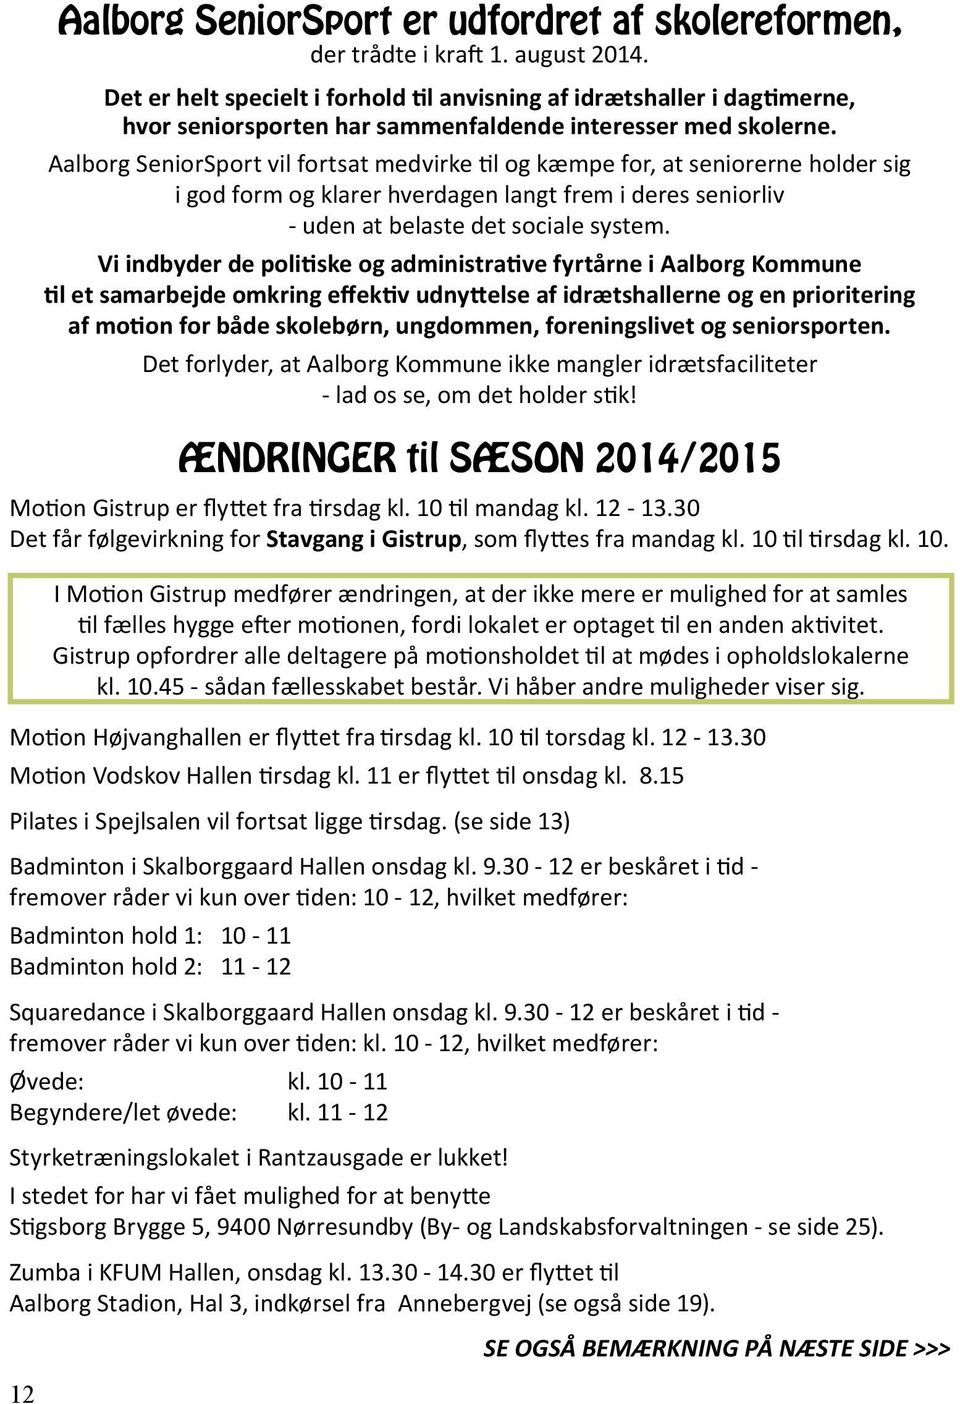 30-12 er beskåret i tid - fremover råder vi kun over tiden: 10-12, hvilket medfører: Badminton hold 1: 10-11 Badminton hold 2: 11-12 Squaredance i Skalborggaard Hallen onsdag kl. 9.